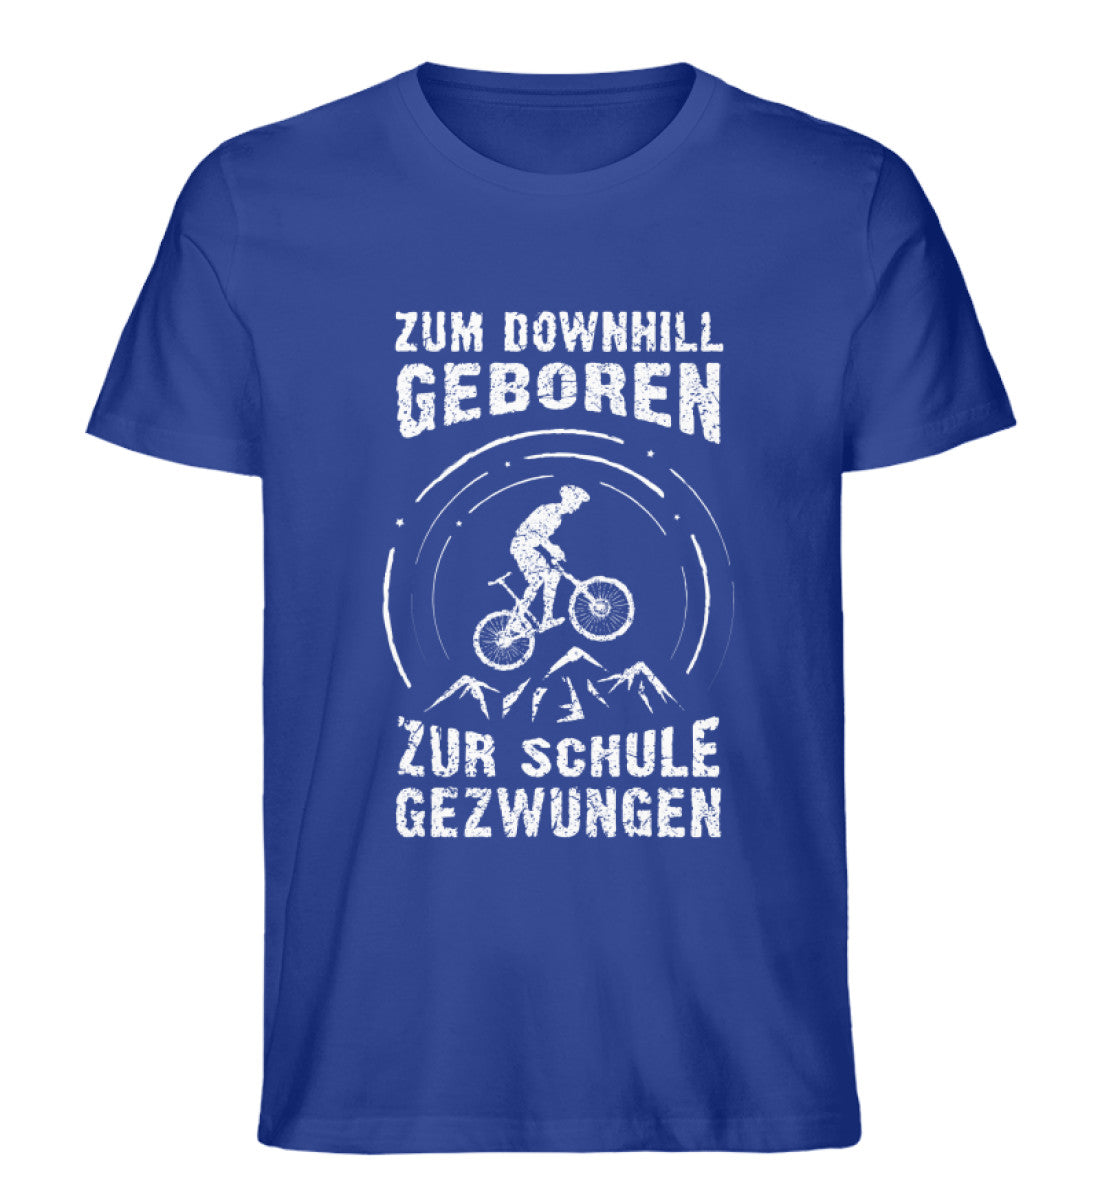 Zum Downhill geboren - Herren Organic T-Shirt mountainbike Royalblau